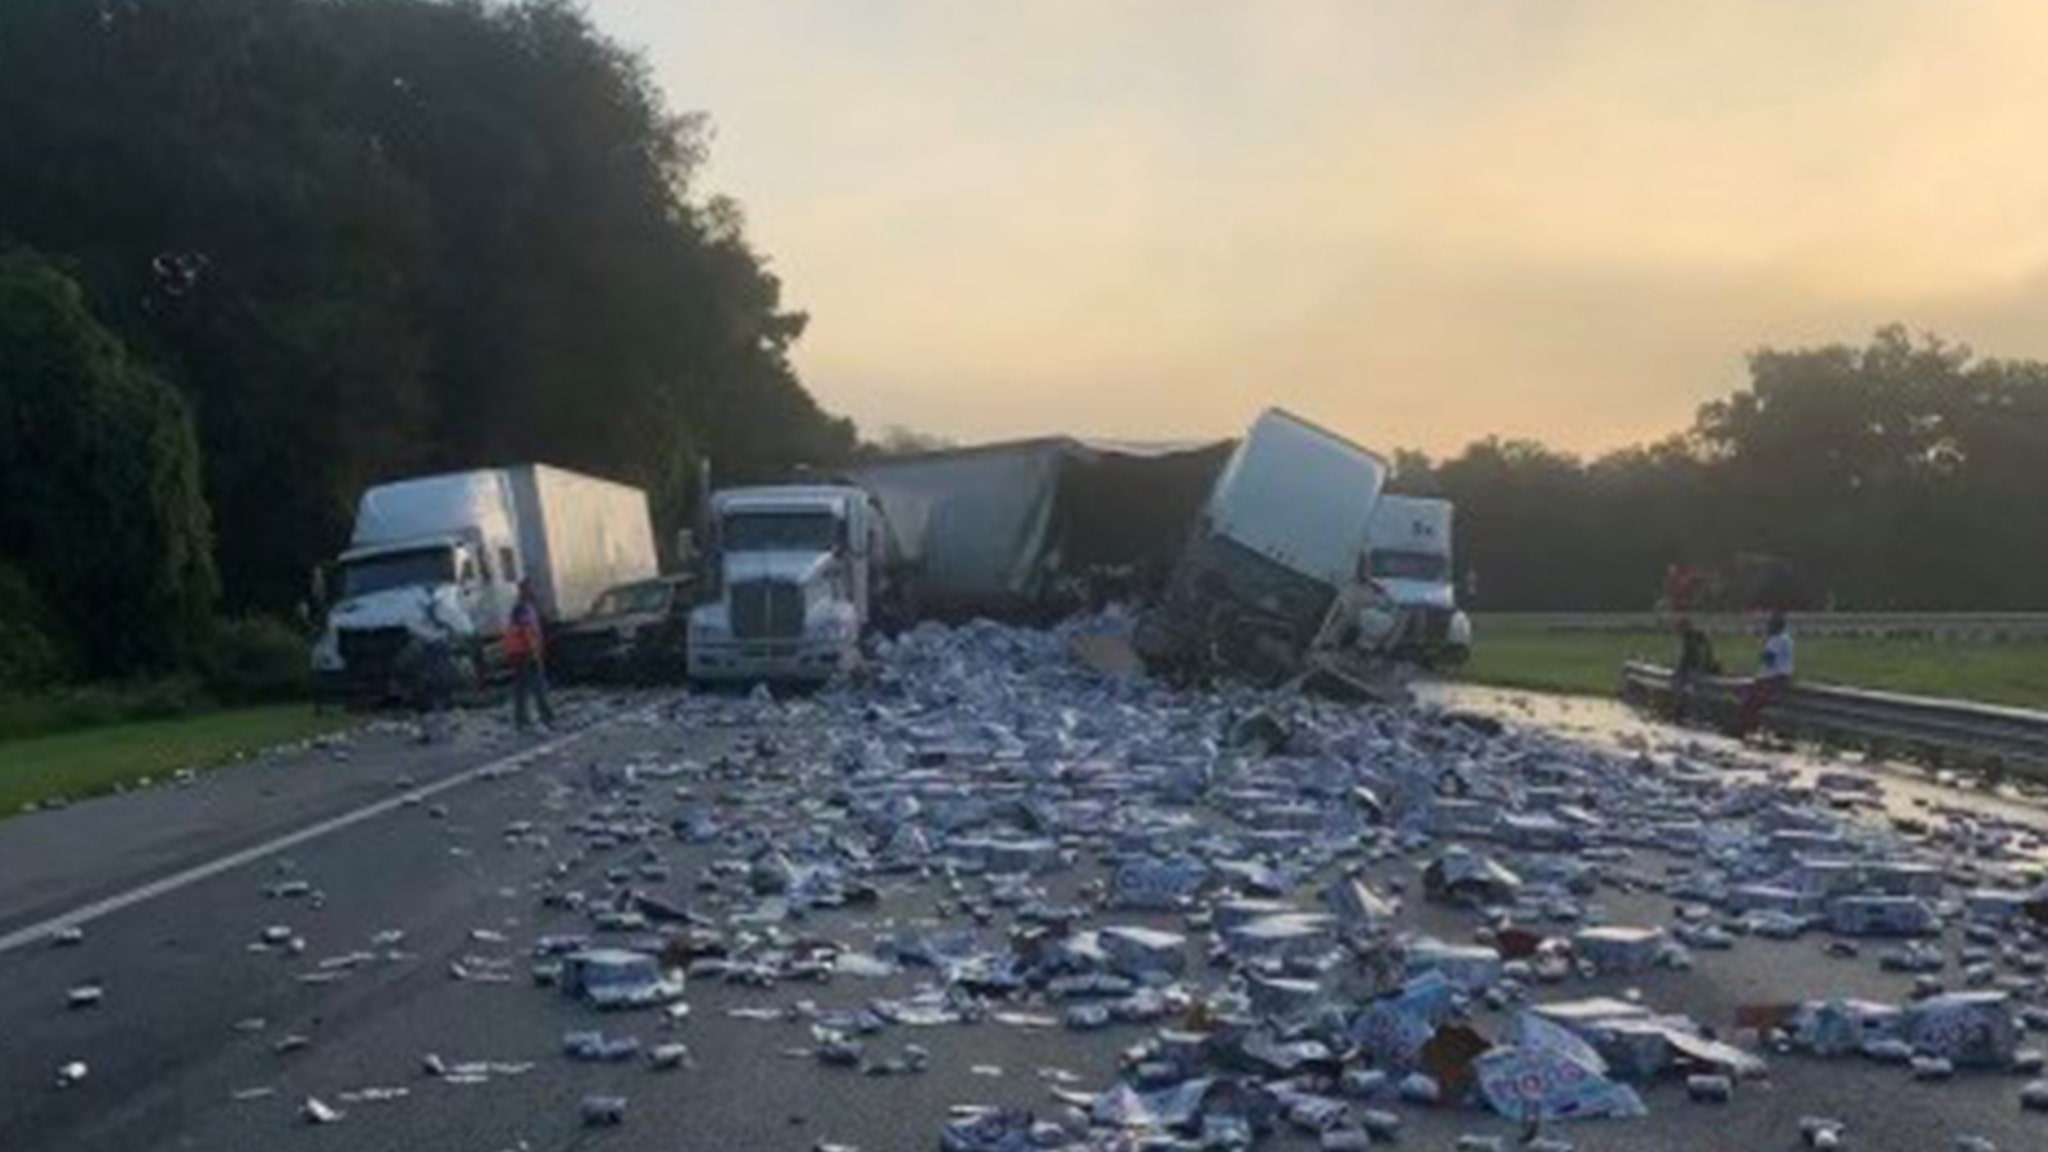 Coors Lights Cans Blanket FL Highway After Multi-Truck Crash